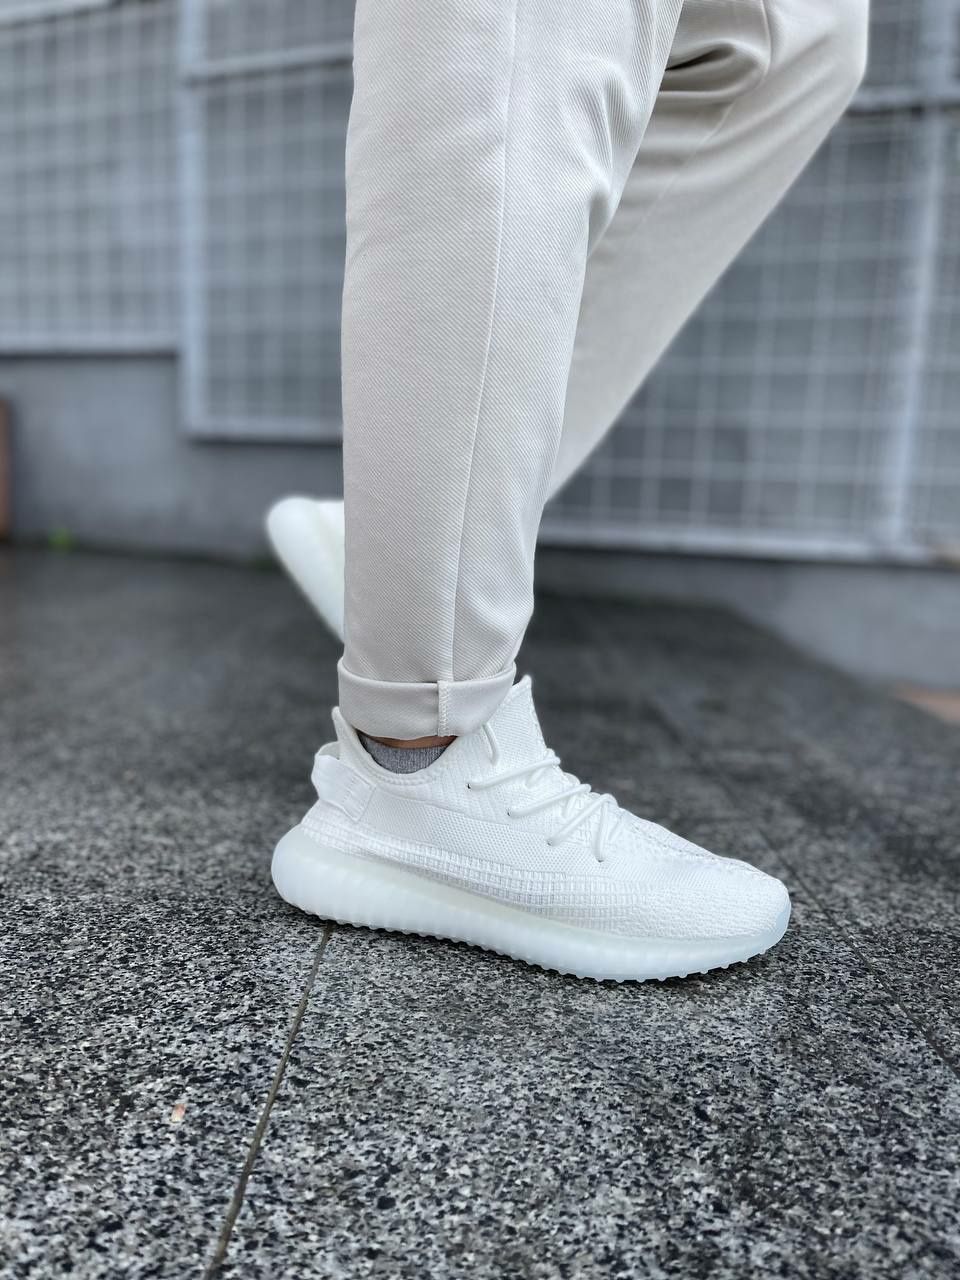 Adidas Yeezy boost 350 white/Мужские кросовки/Чоловічі кросівки/Адидас